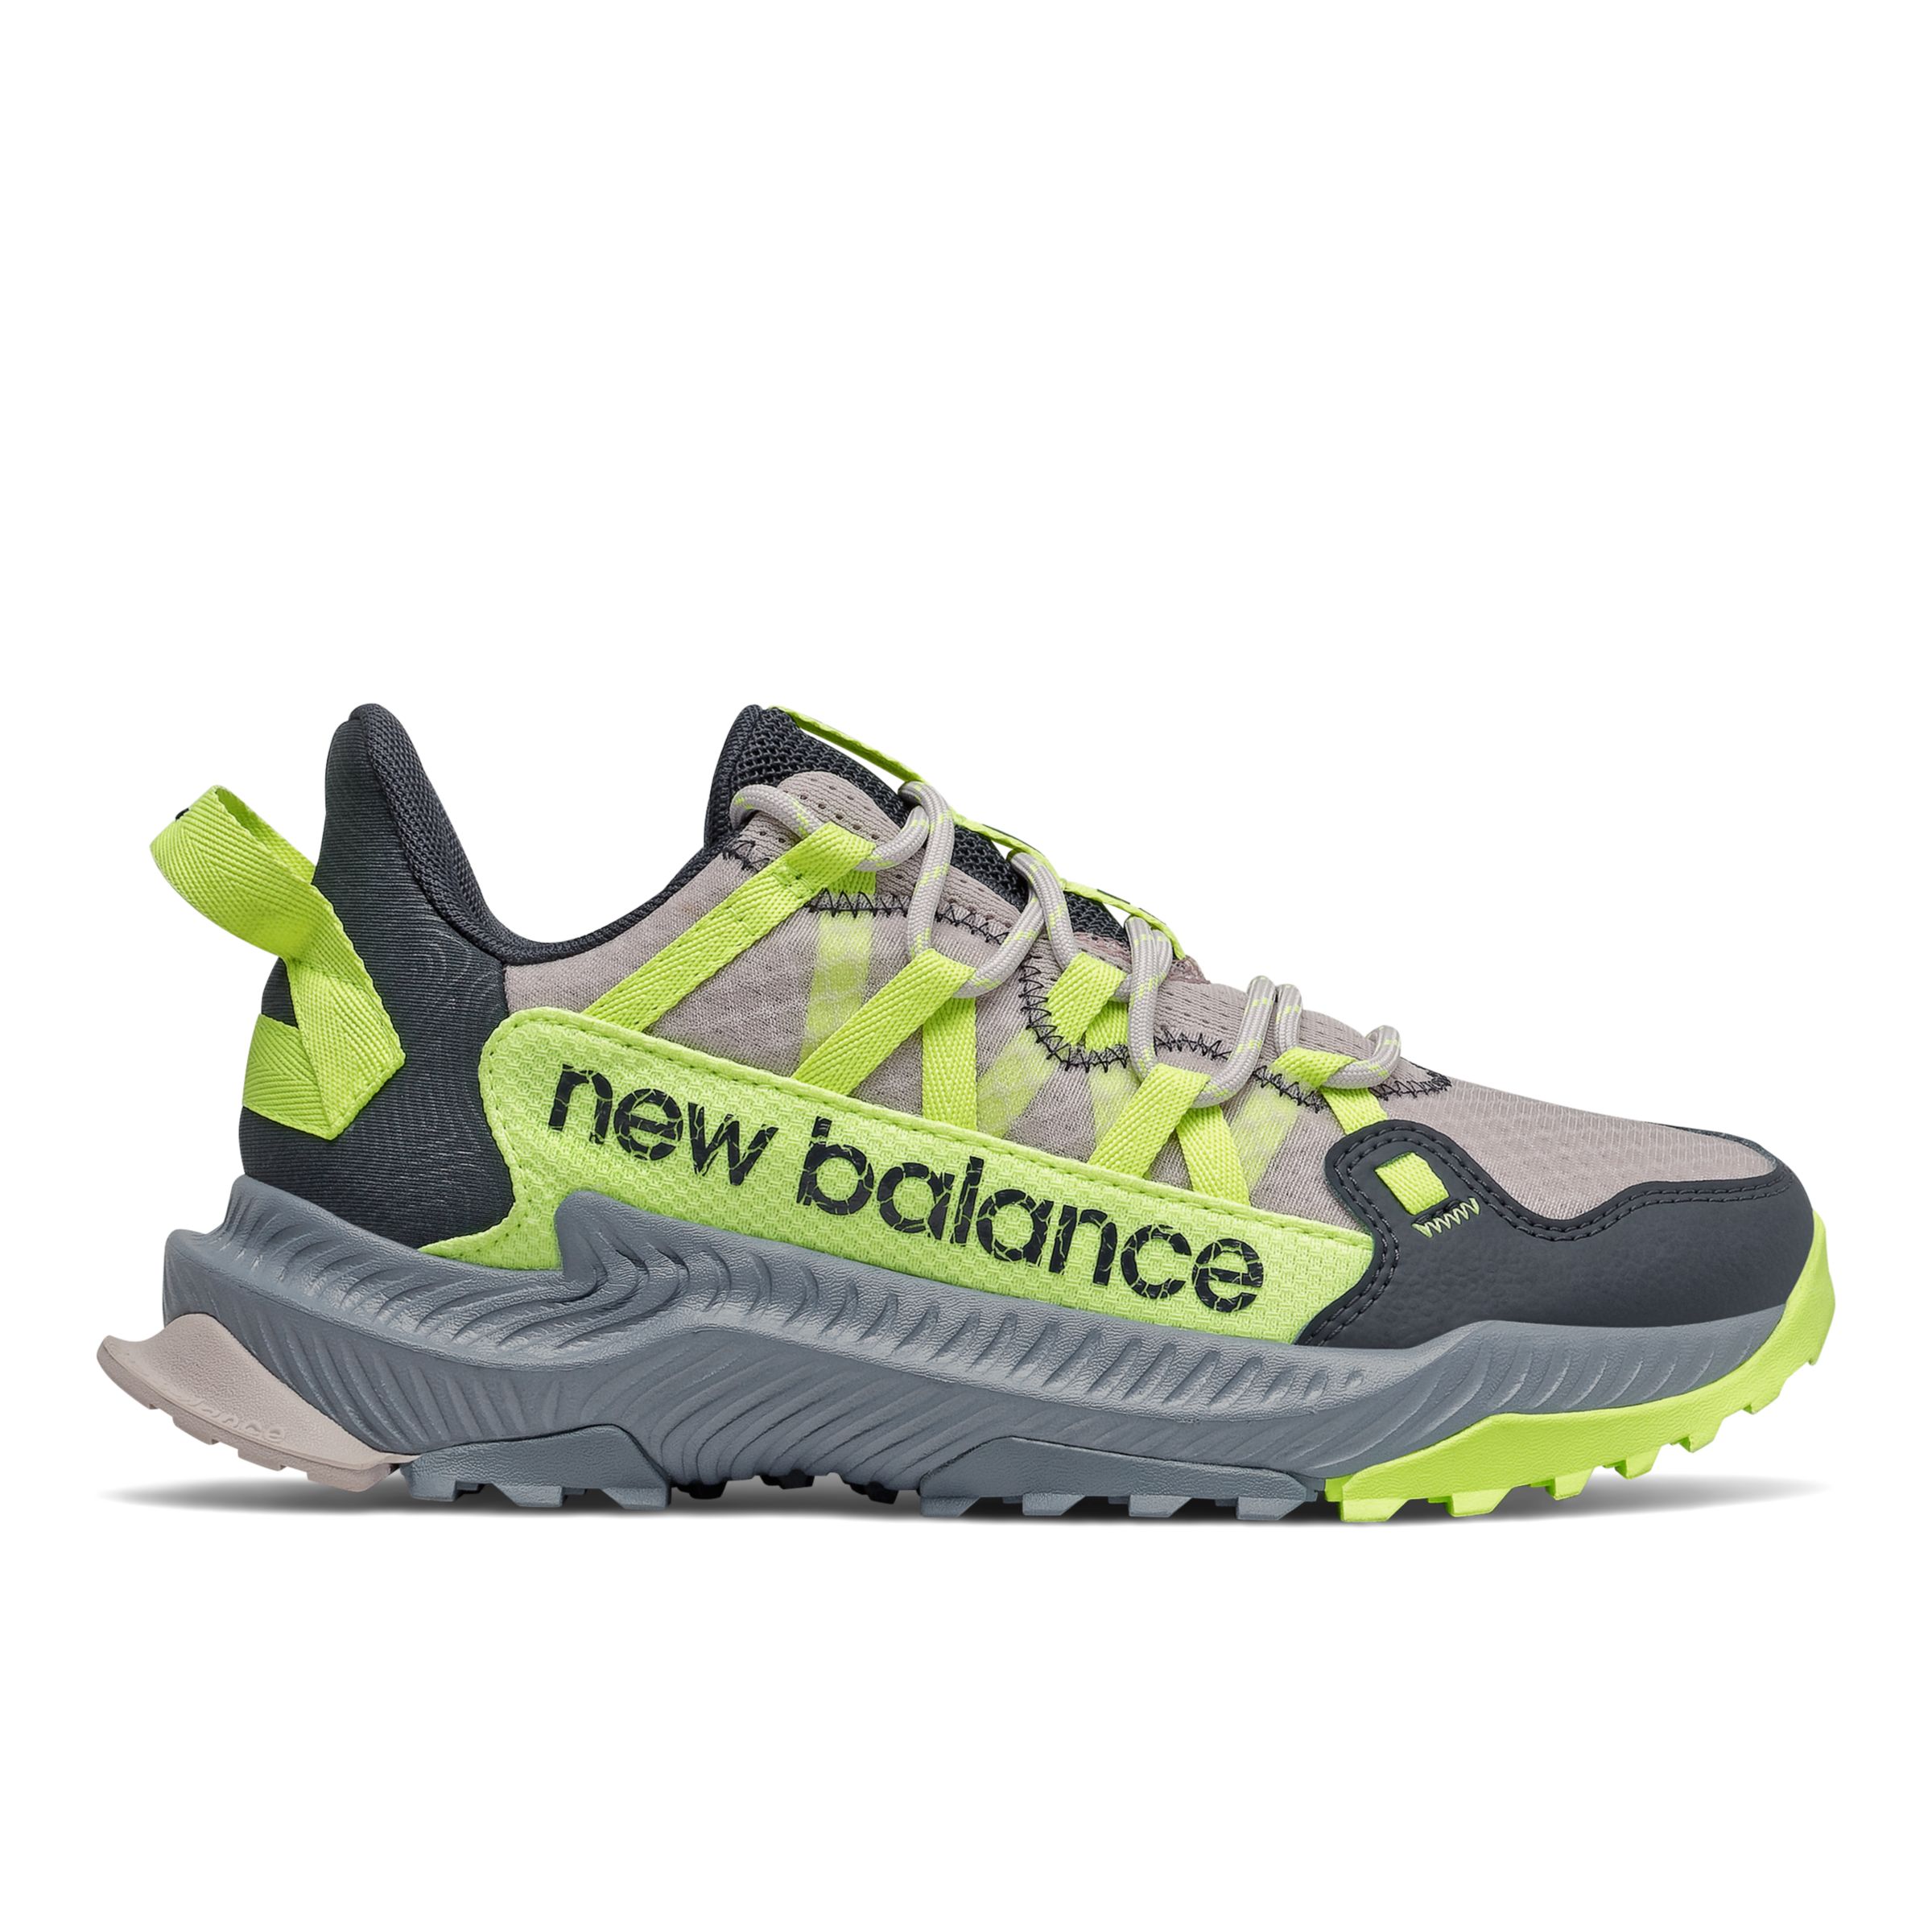 new balance women's wt510v3 trail running shoe